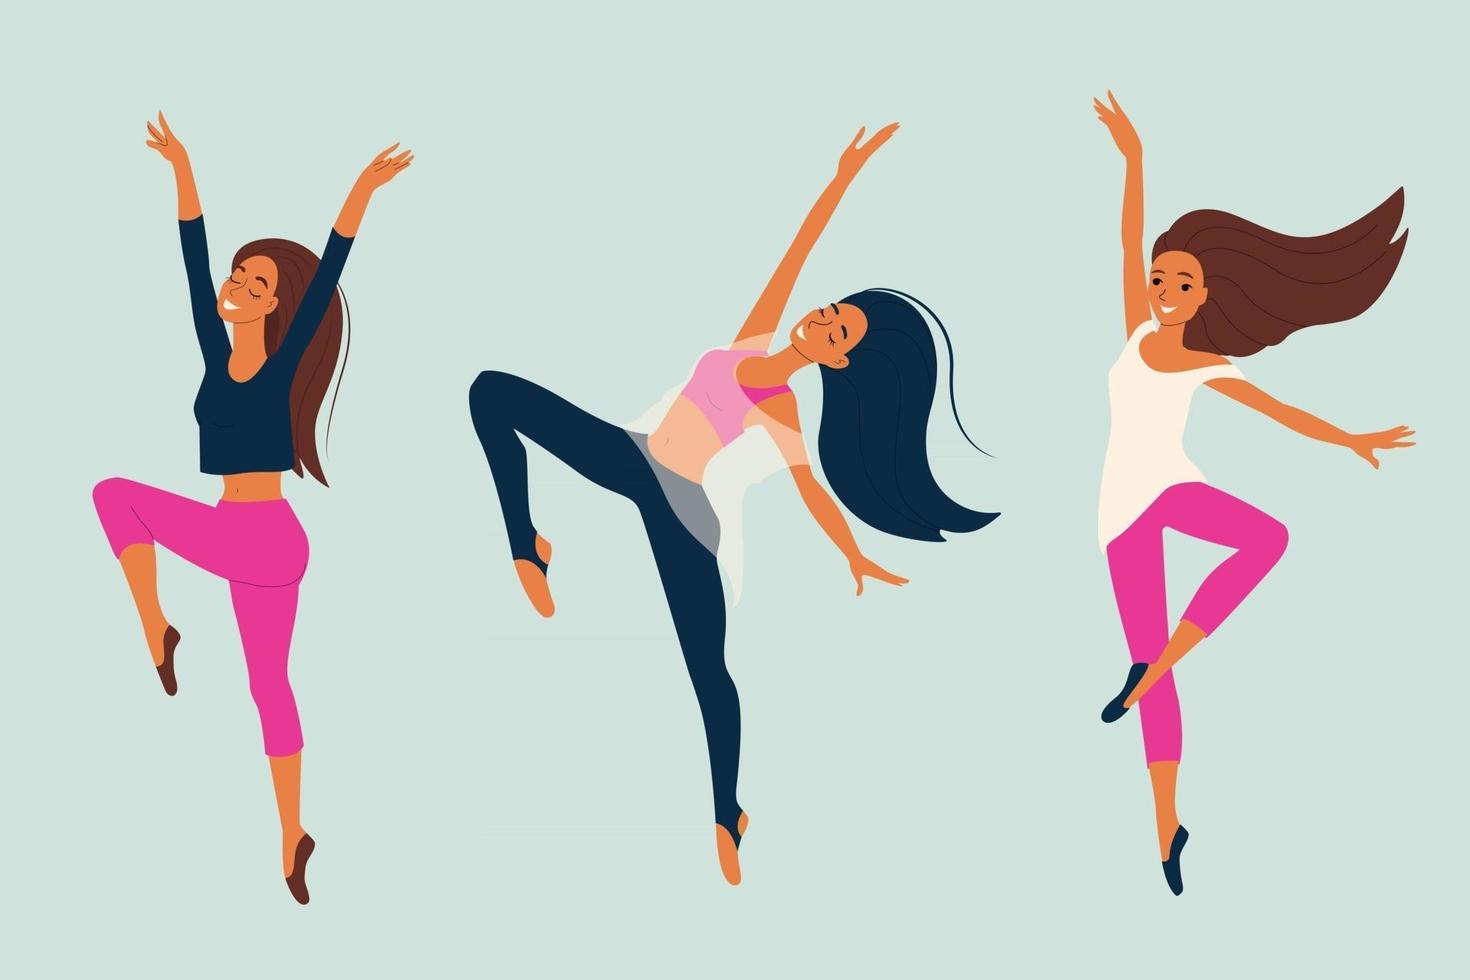 jovem dançando dançarina de dança moderna em pose graciosa conjunto de personagens femininos em ilustração vetorial de estilo cartoon vetor